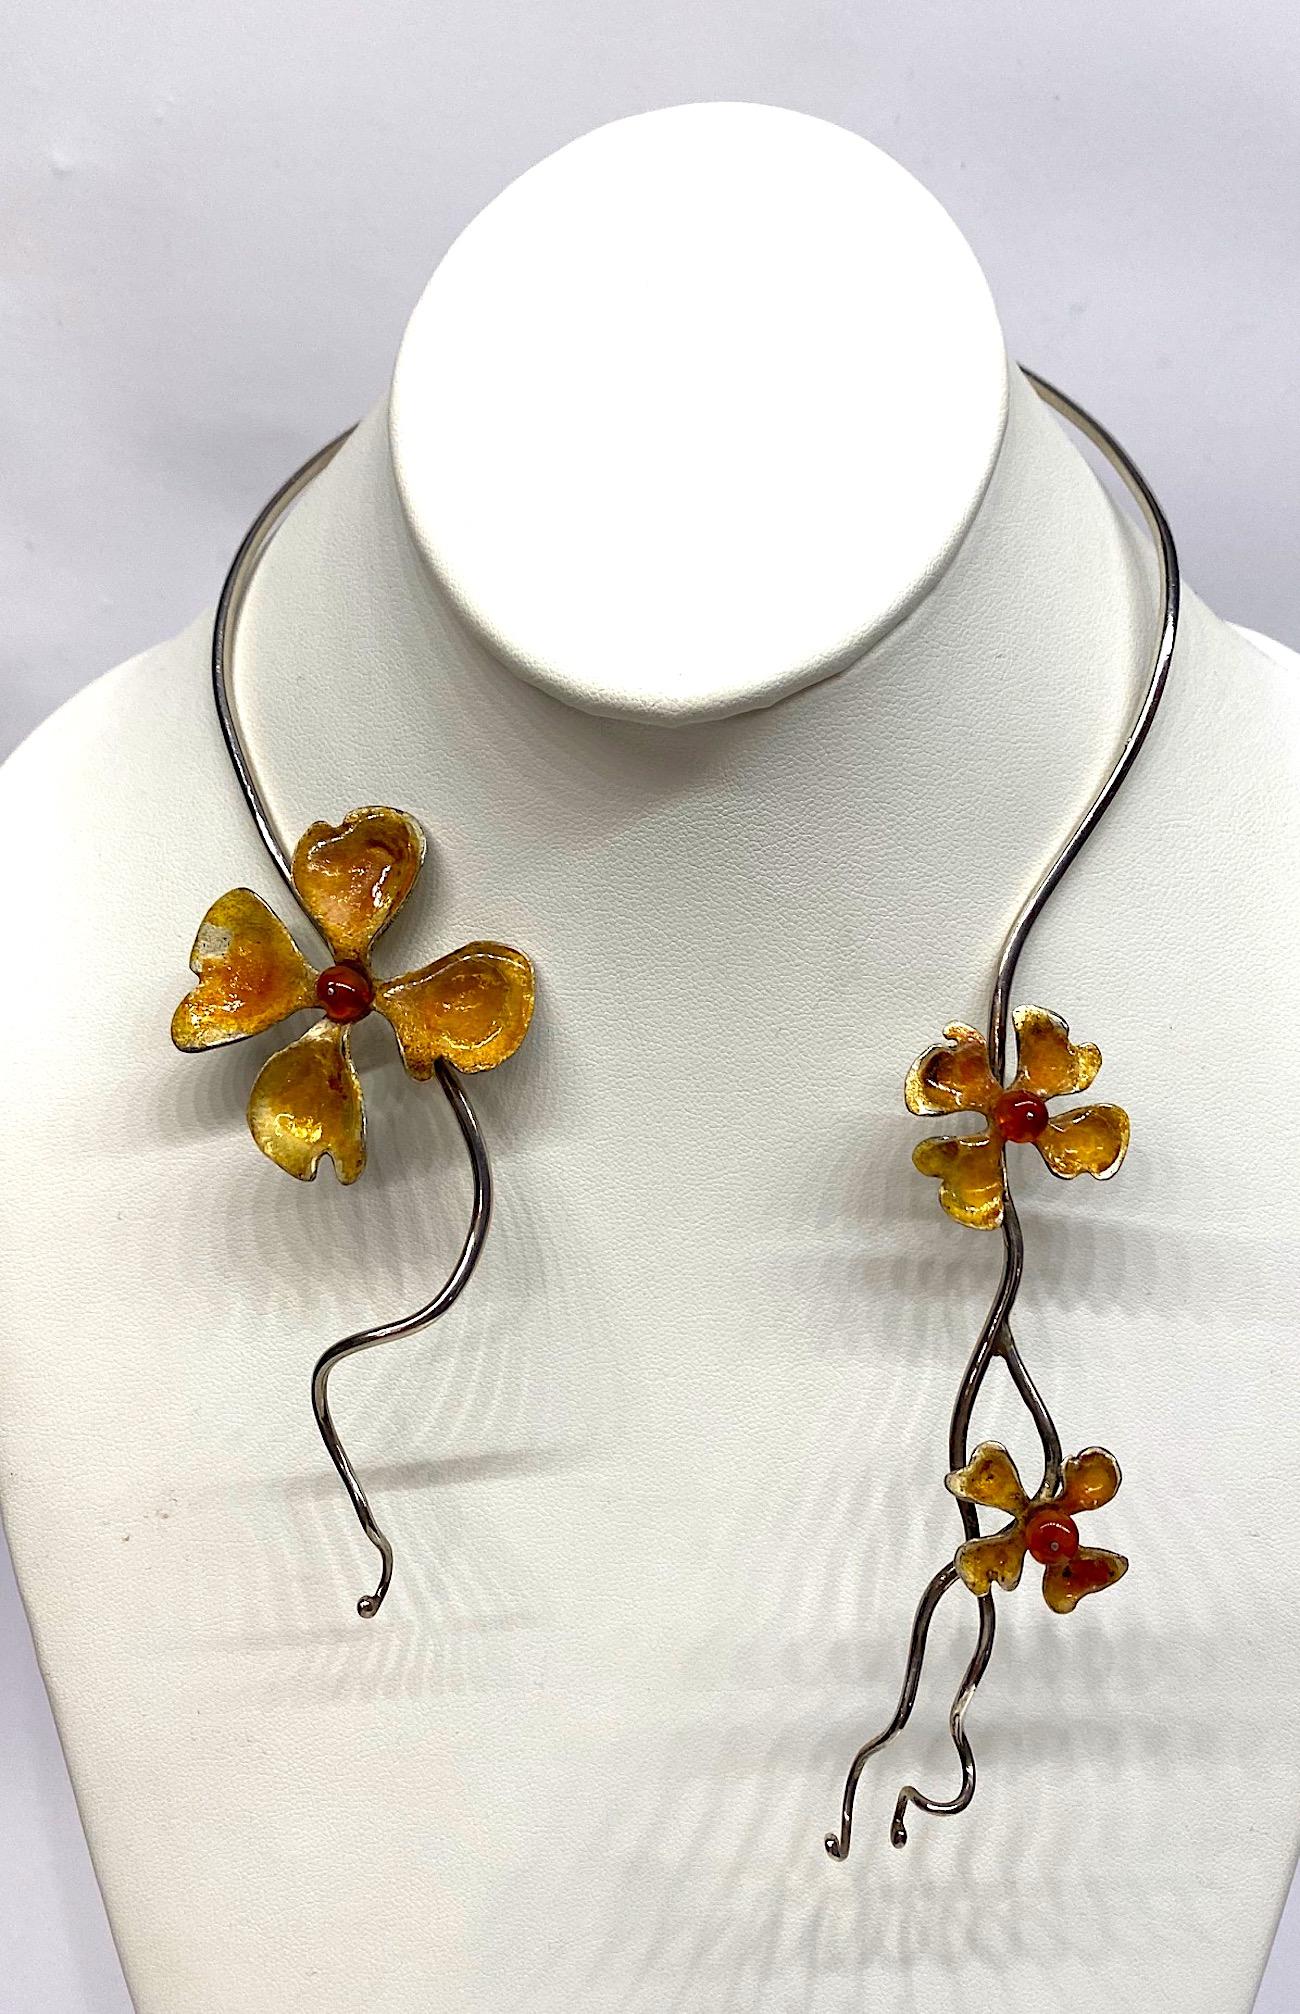 Starre Halskette mit drei emaillierten Blumen, um 1970/80 hergestellt. der 3 mm dicke Sterlingsilberdraht ist so gebogen, dass er um den Hals passt. Jedes Ende ist gewellt und verjüngt sich anmutig auf etwas mehr als 1 mm und endet in einer kleinen